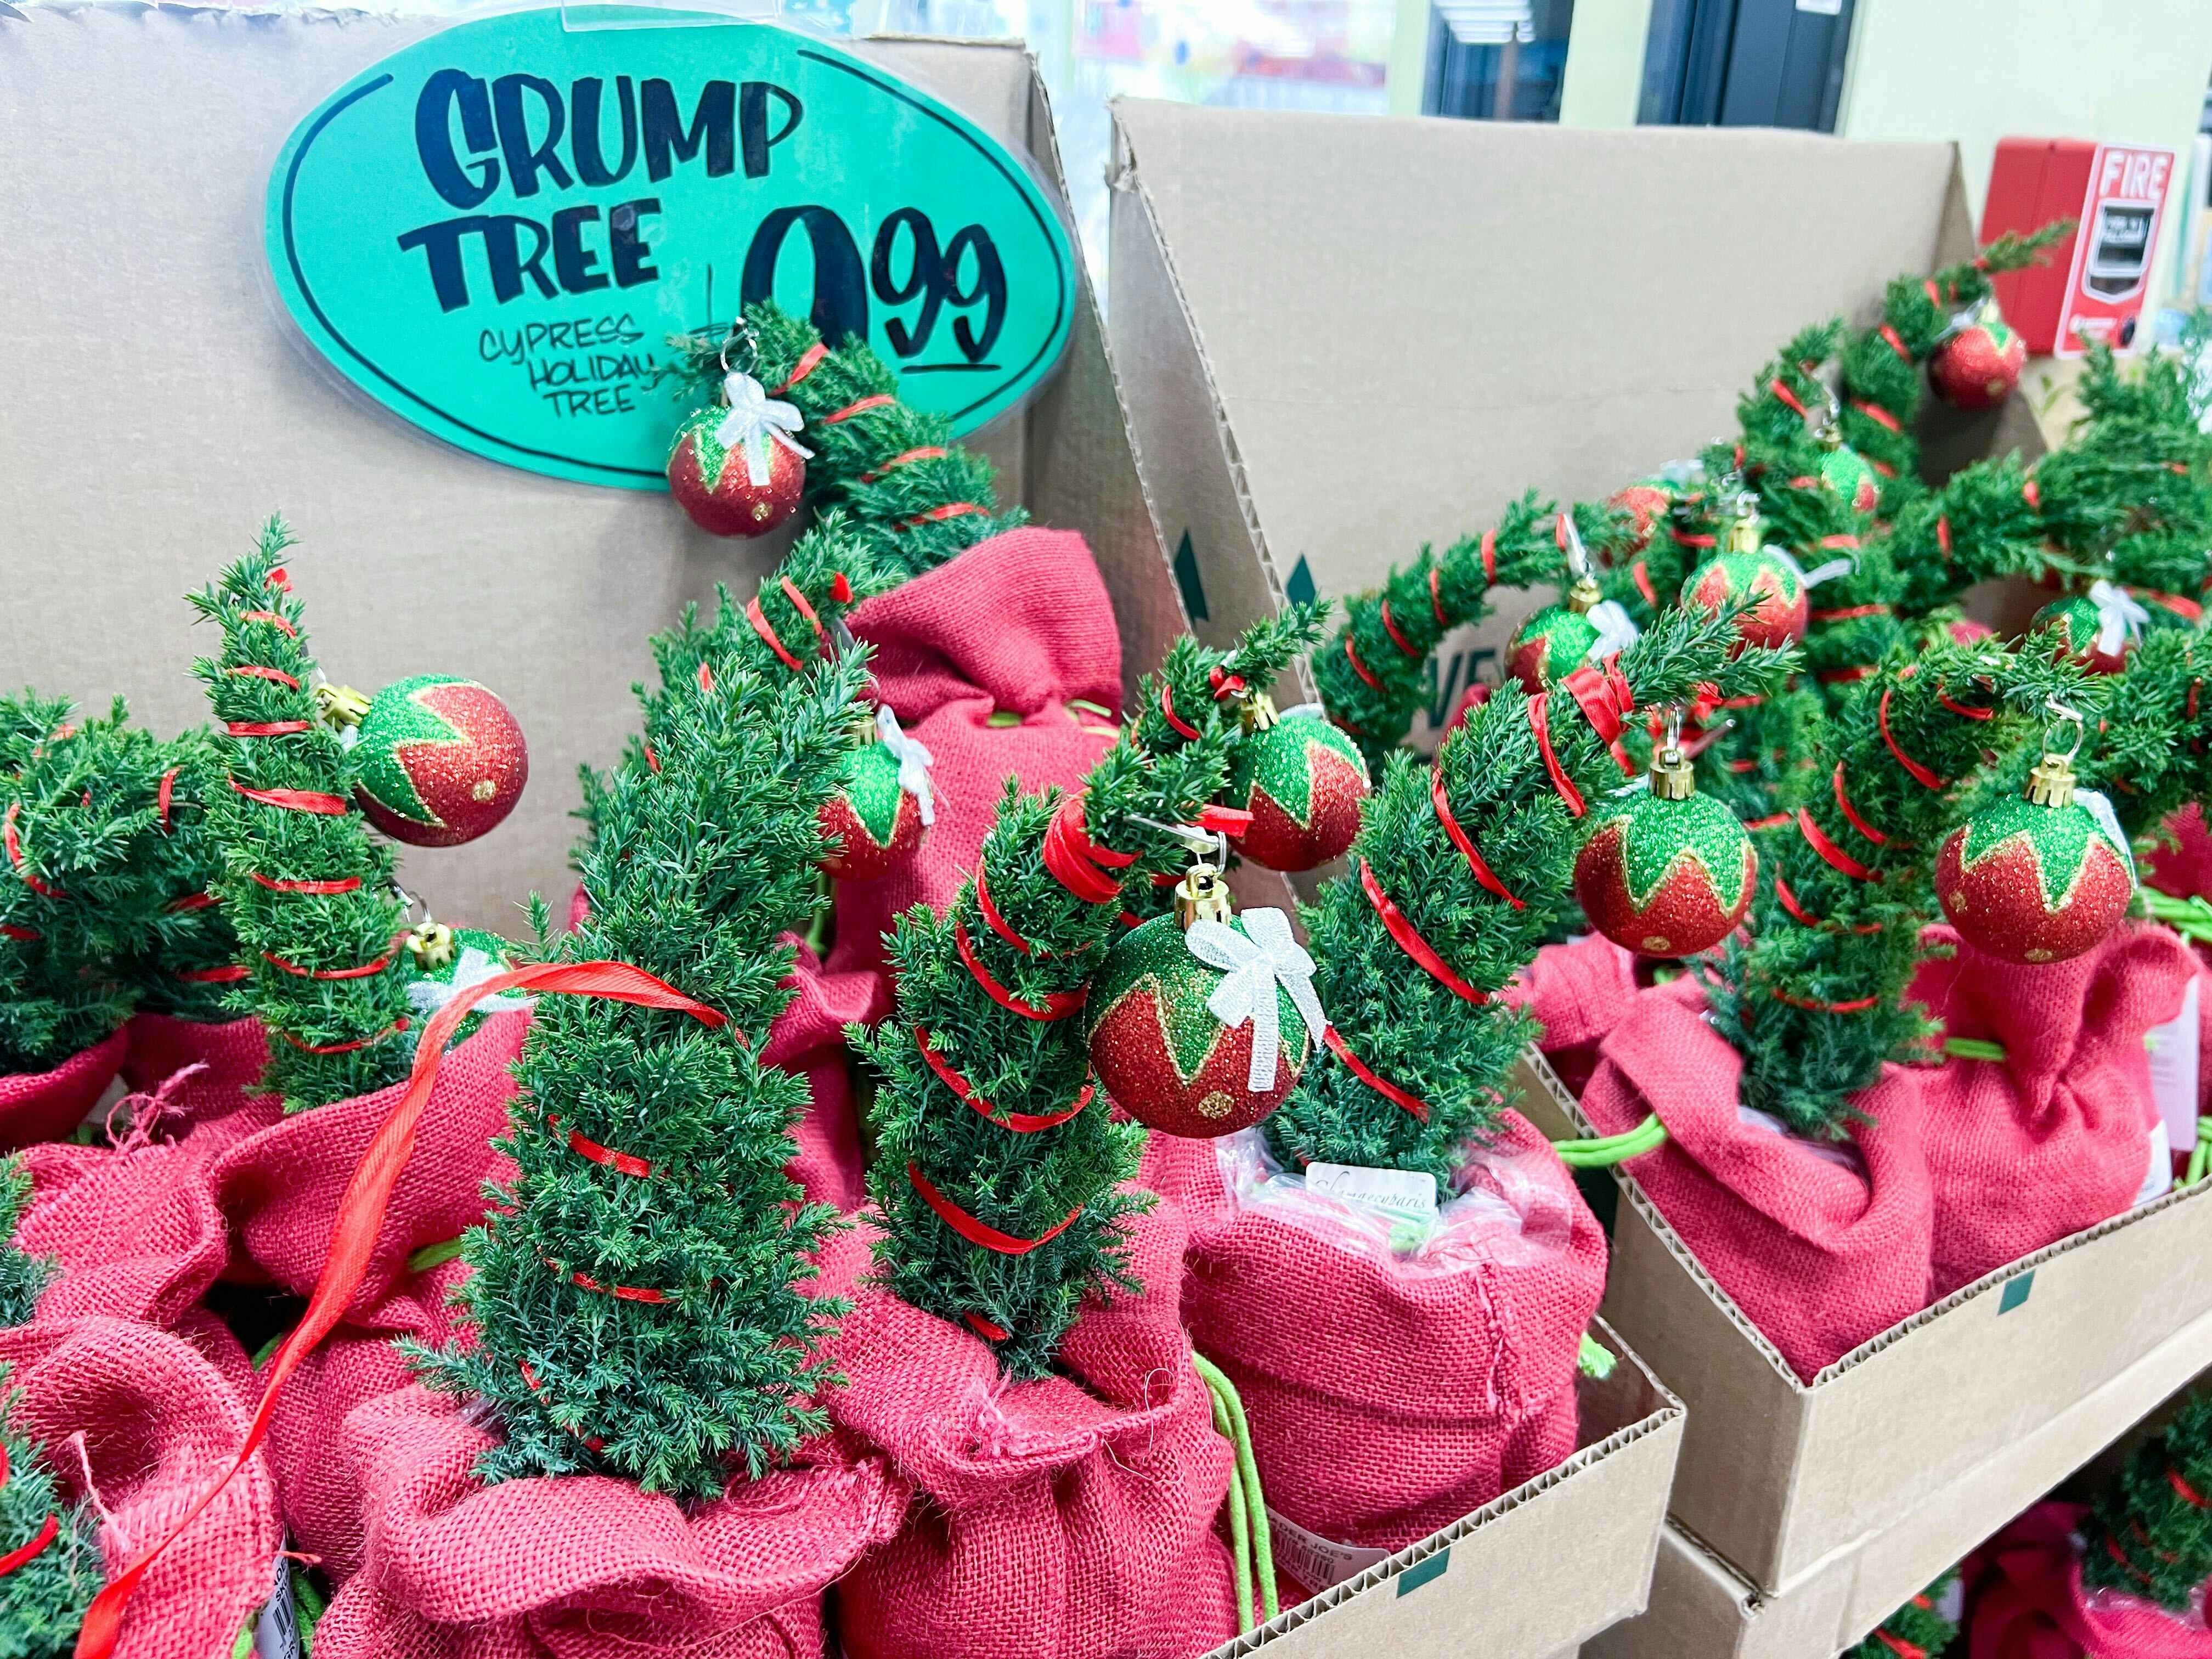 display of Trader Joe's Holiday Grump Trees